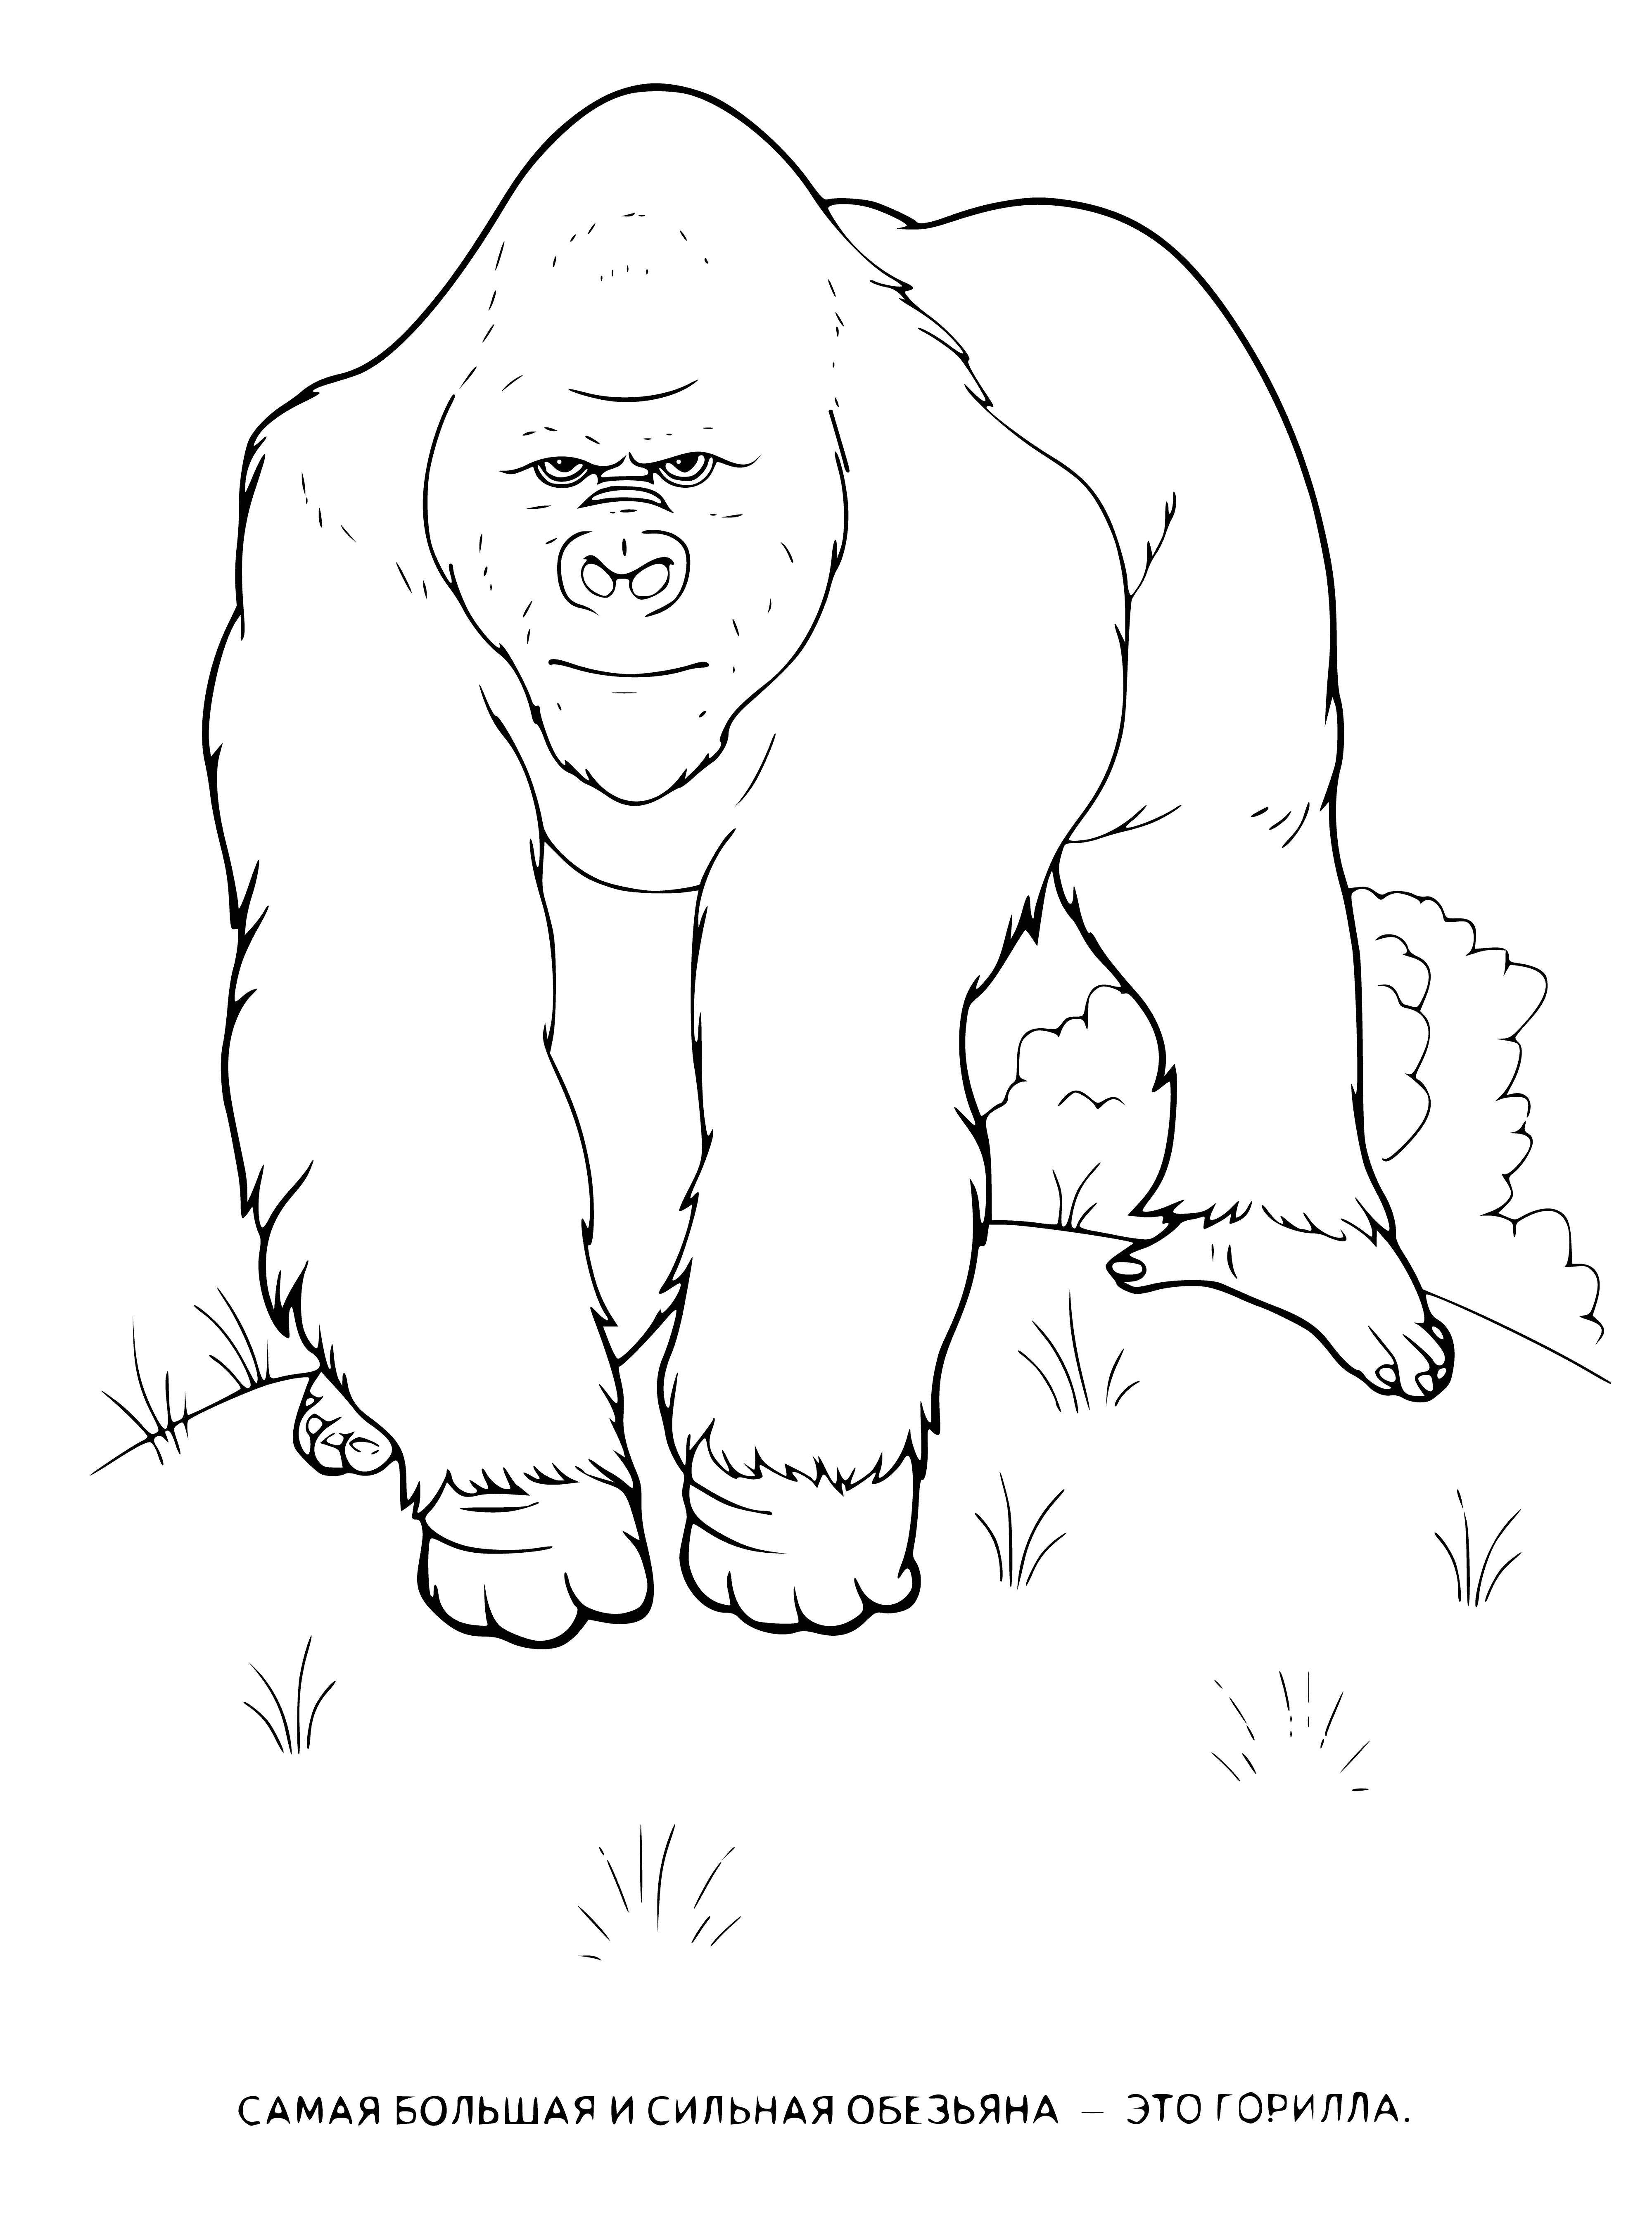 Gorilla coloring page